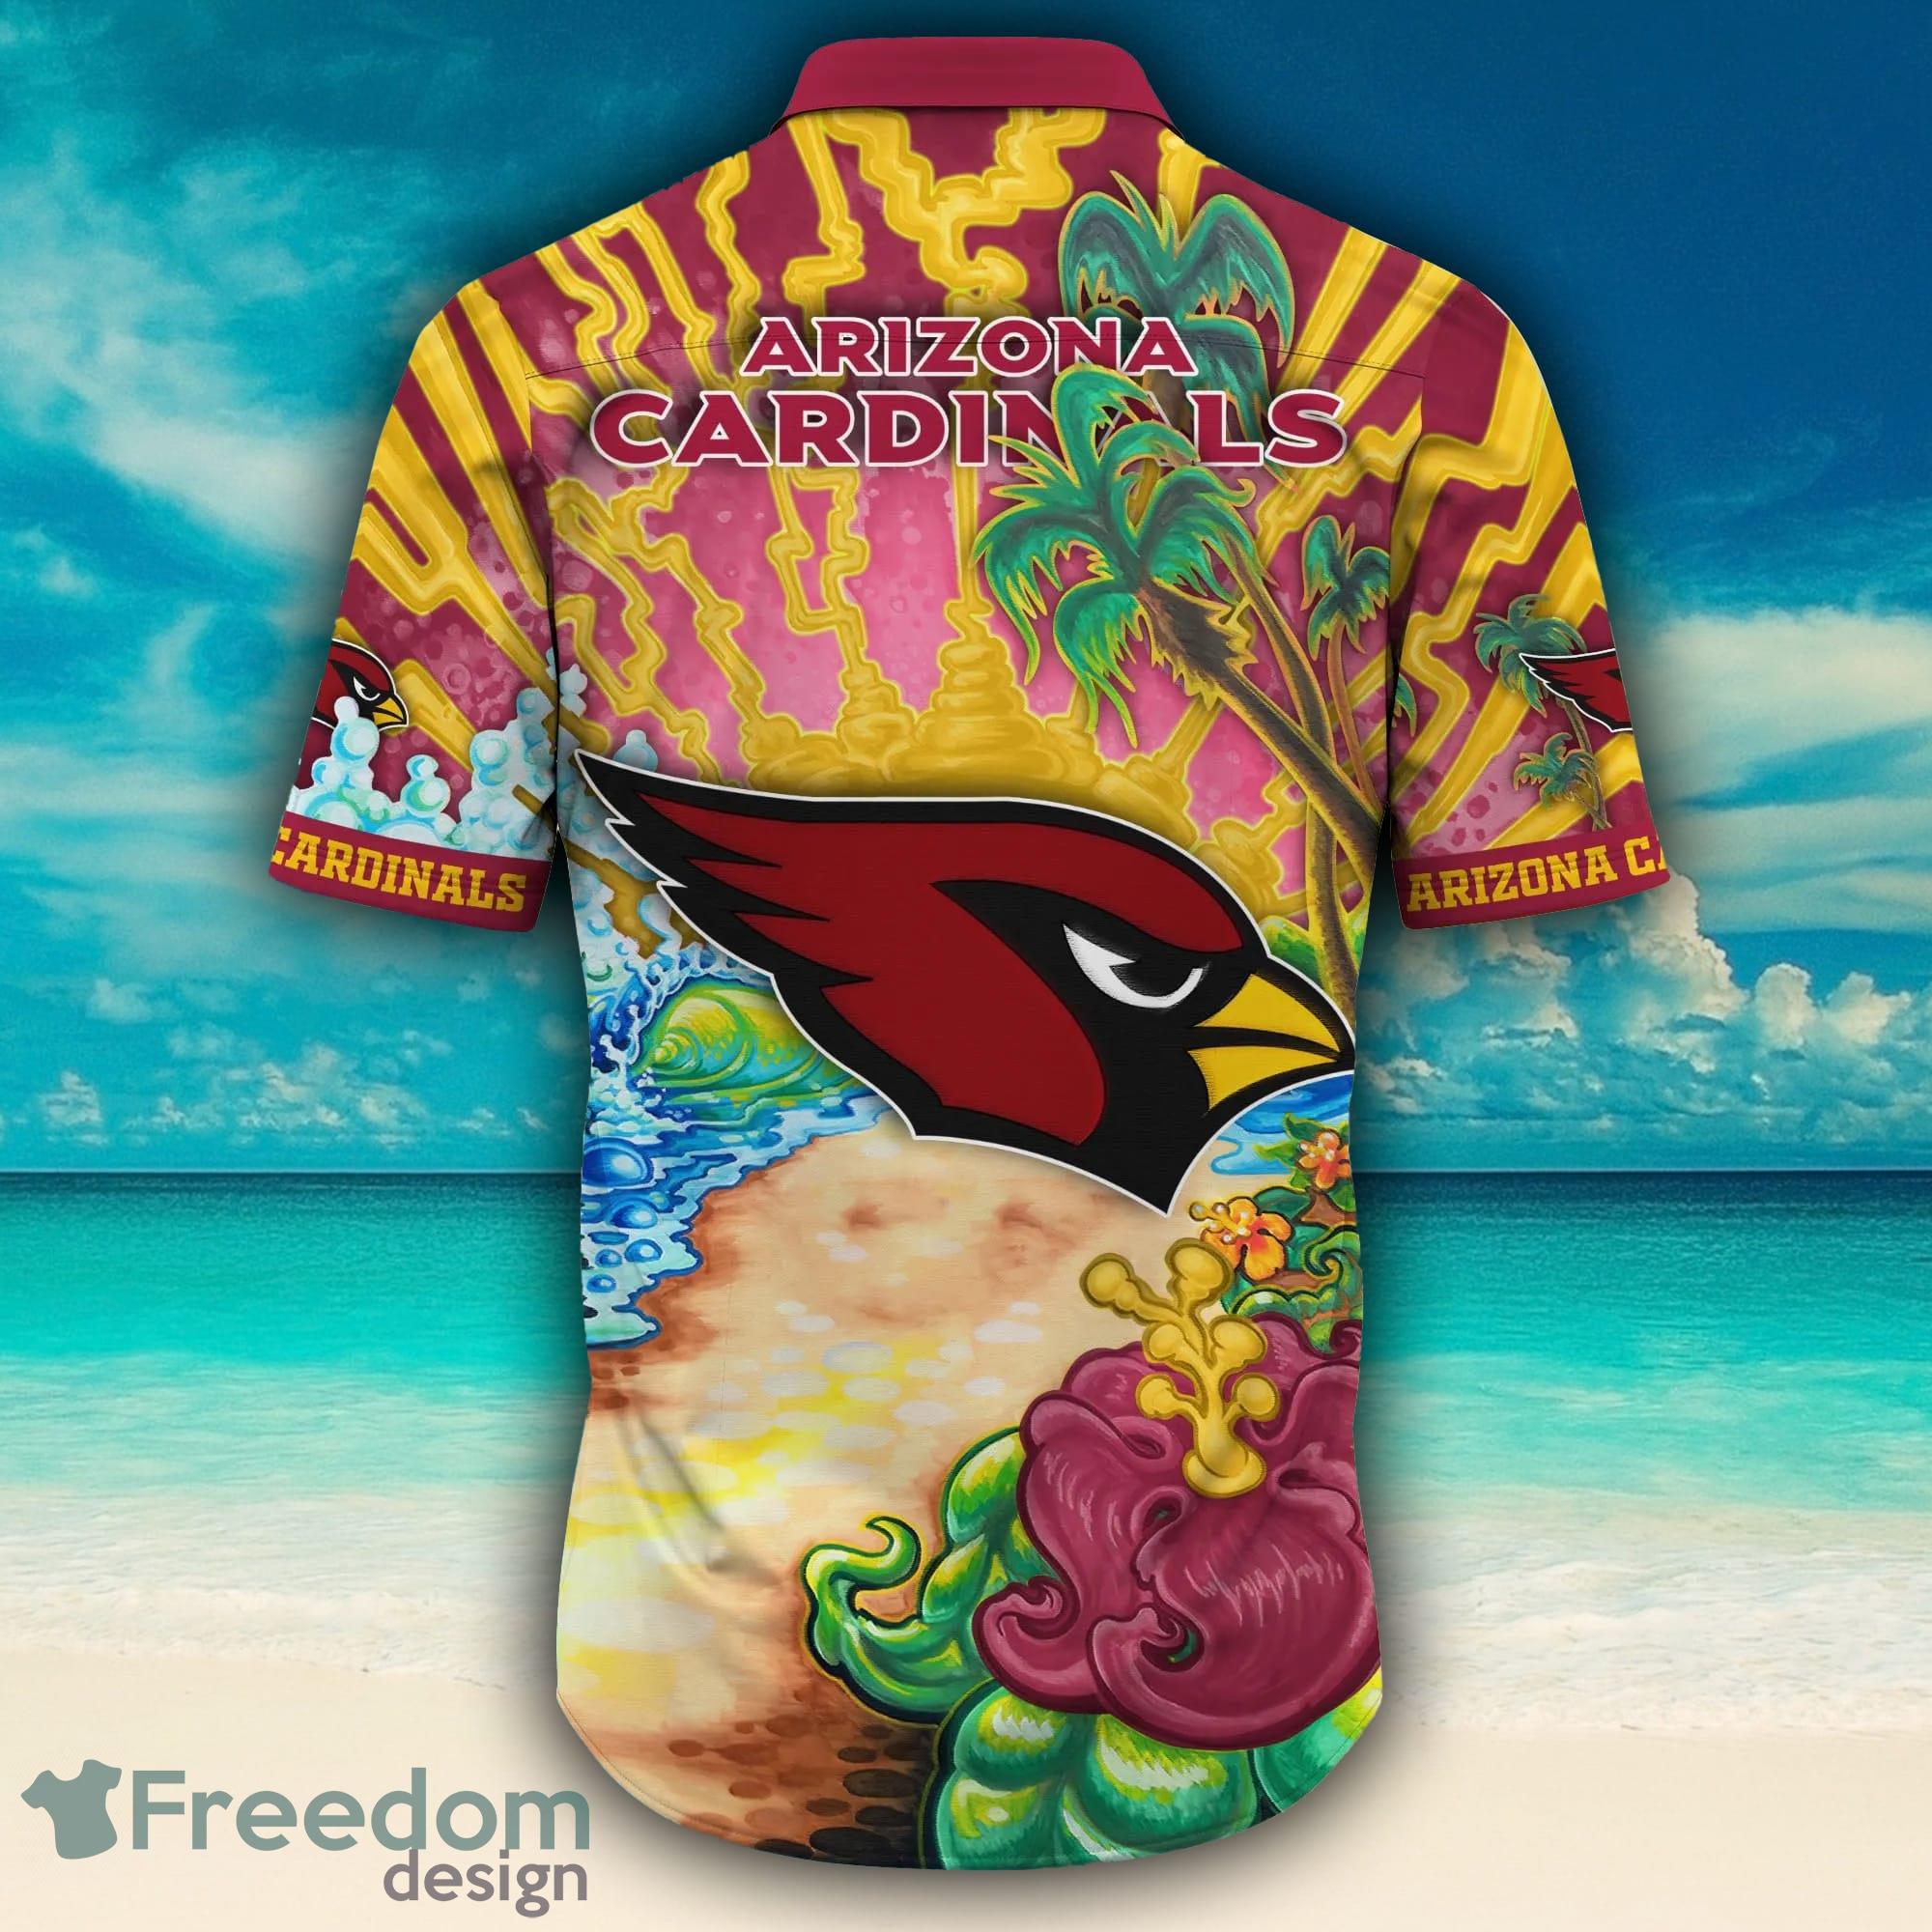 Arizona Cardinals Symbol Louis Vuitton Hawaiian Shirt - Reallgraphics